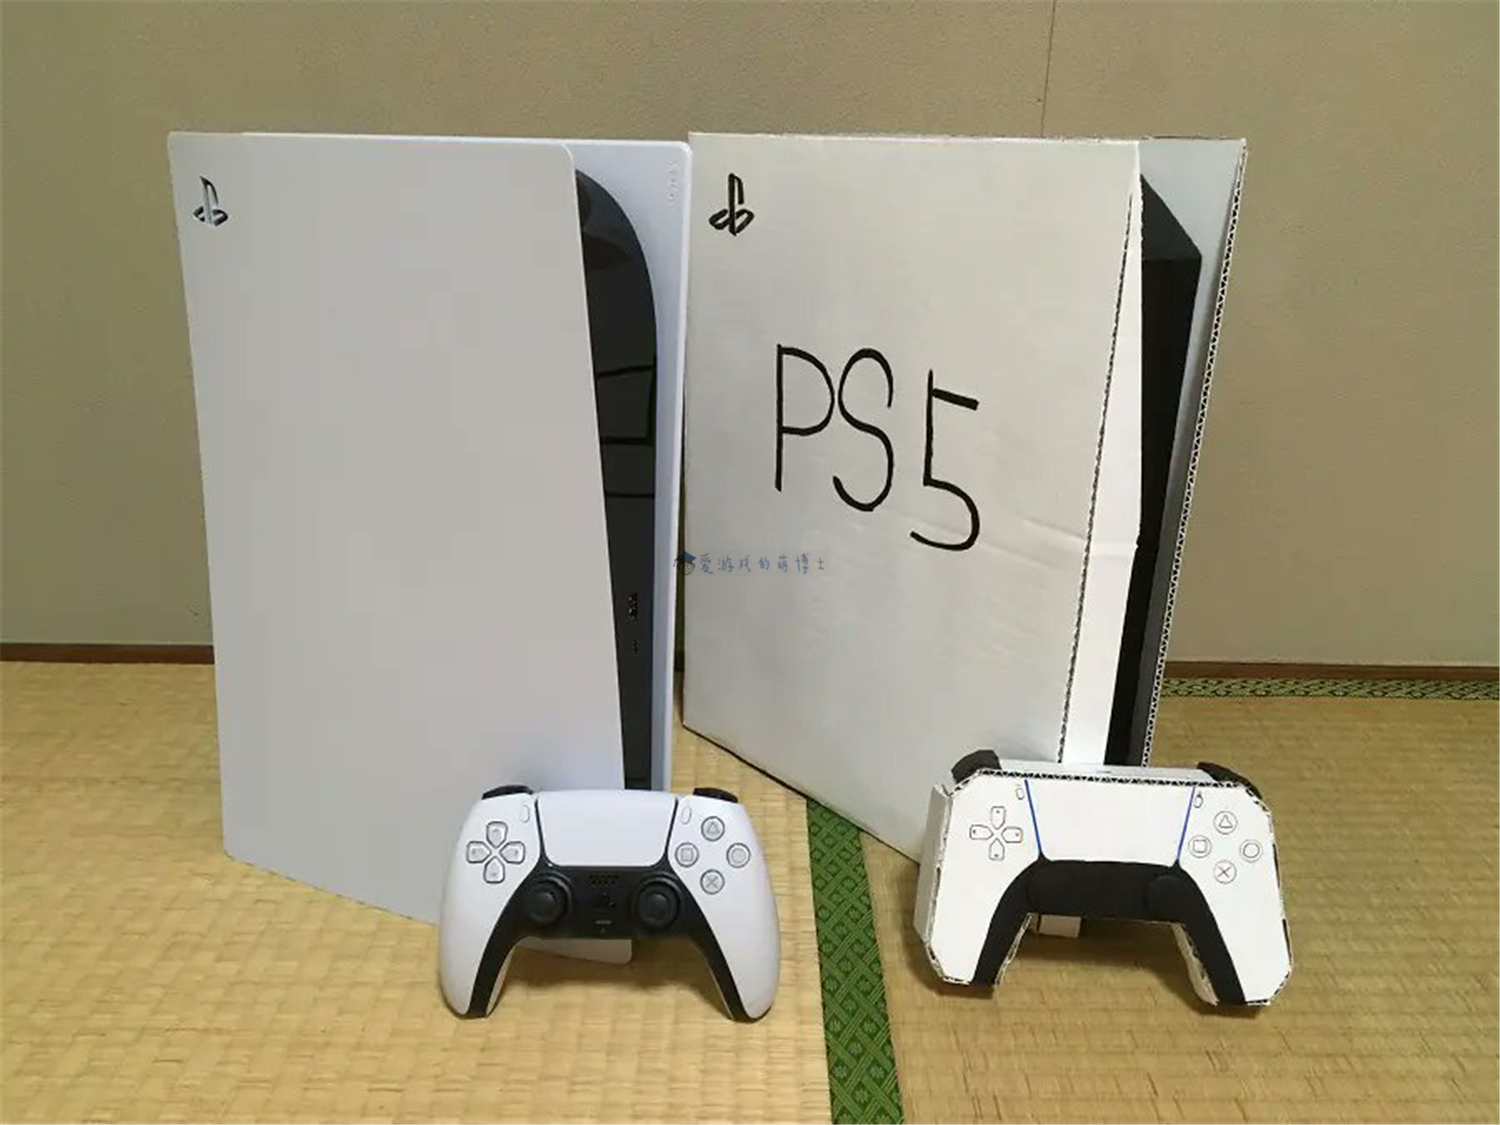 日本玩家自制纸质PS5游戏机用来望梅止渴，如今终于得偿所愿-小米游戏中心